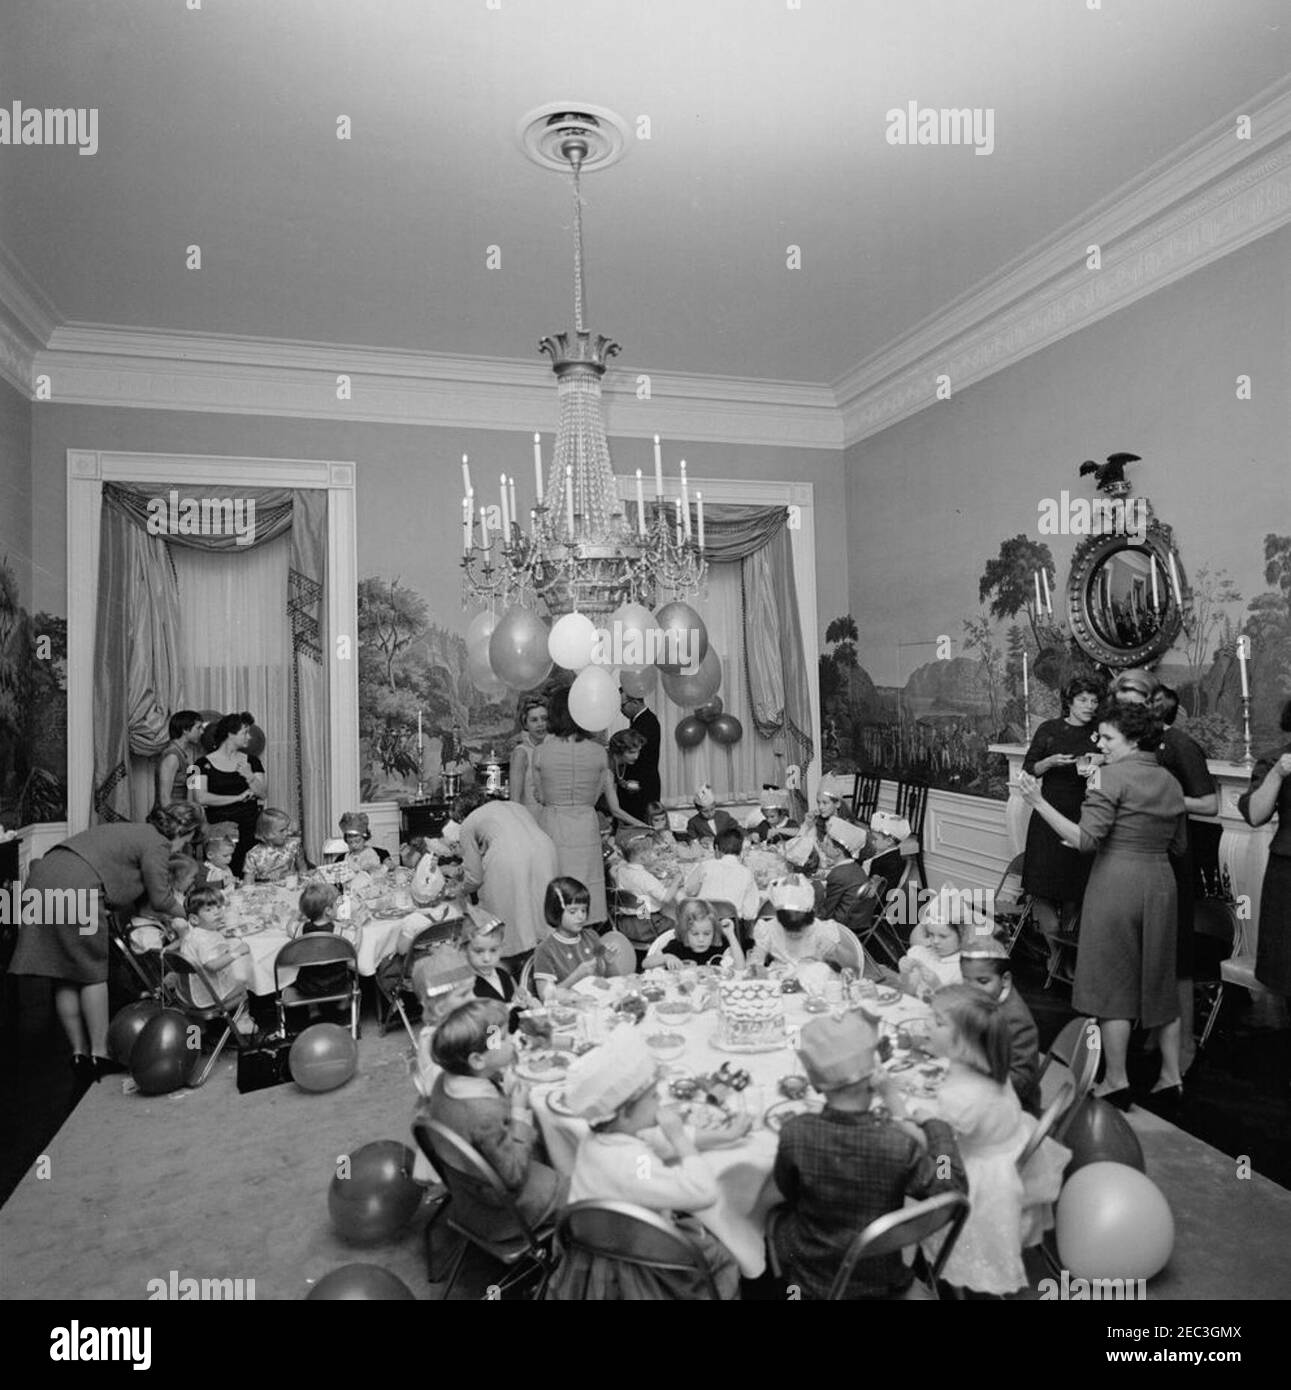 Fiesta de cumpleaños para Caroline Kennedy y John F. Kennedy, Jr. Los niños pequeños se sientan en las mesas del comedor del Presidente 2019s (Residencia) de la Casa Blanca, Washington, D.C., durante una fiesta de cumpleaños conjunta para Caroline Kennedy y John F. Kennedy, Jr.; la primera Dama Jacqueline Kennedy (de vuelta a la cámara) se encuentra en el centro de fondo. Caroline (derecha) se sienta en la mesa en primer plano con Maria Shriver (sentado en el centro, sosteniendo lollipop) y Avery Hatcher, hijo del Secretario de Prensa asociado, Andrew T. Hatcher (sentado a la derecha de Caroline, parcialmente oculto); John, Jr. (A la izquierda, frente a la cámara), se sienta en tabl Foto de stock